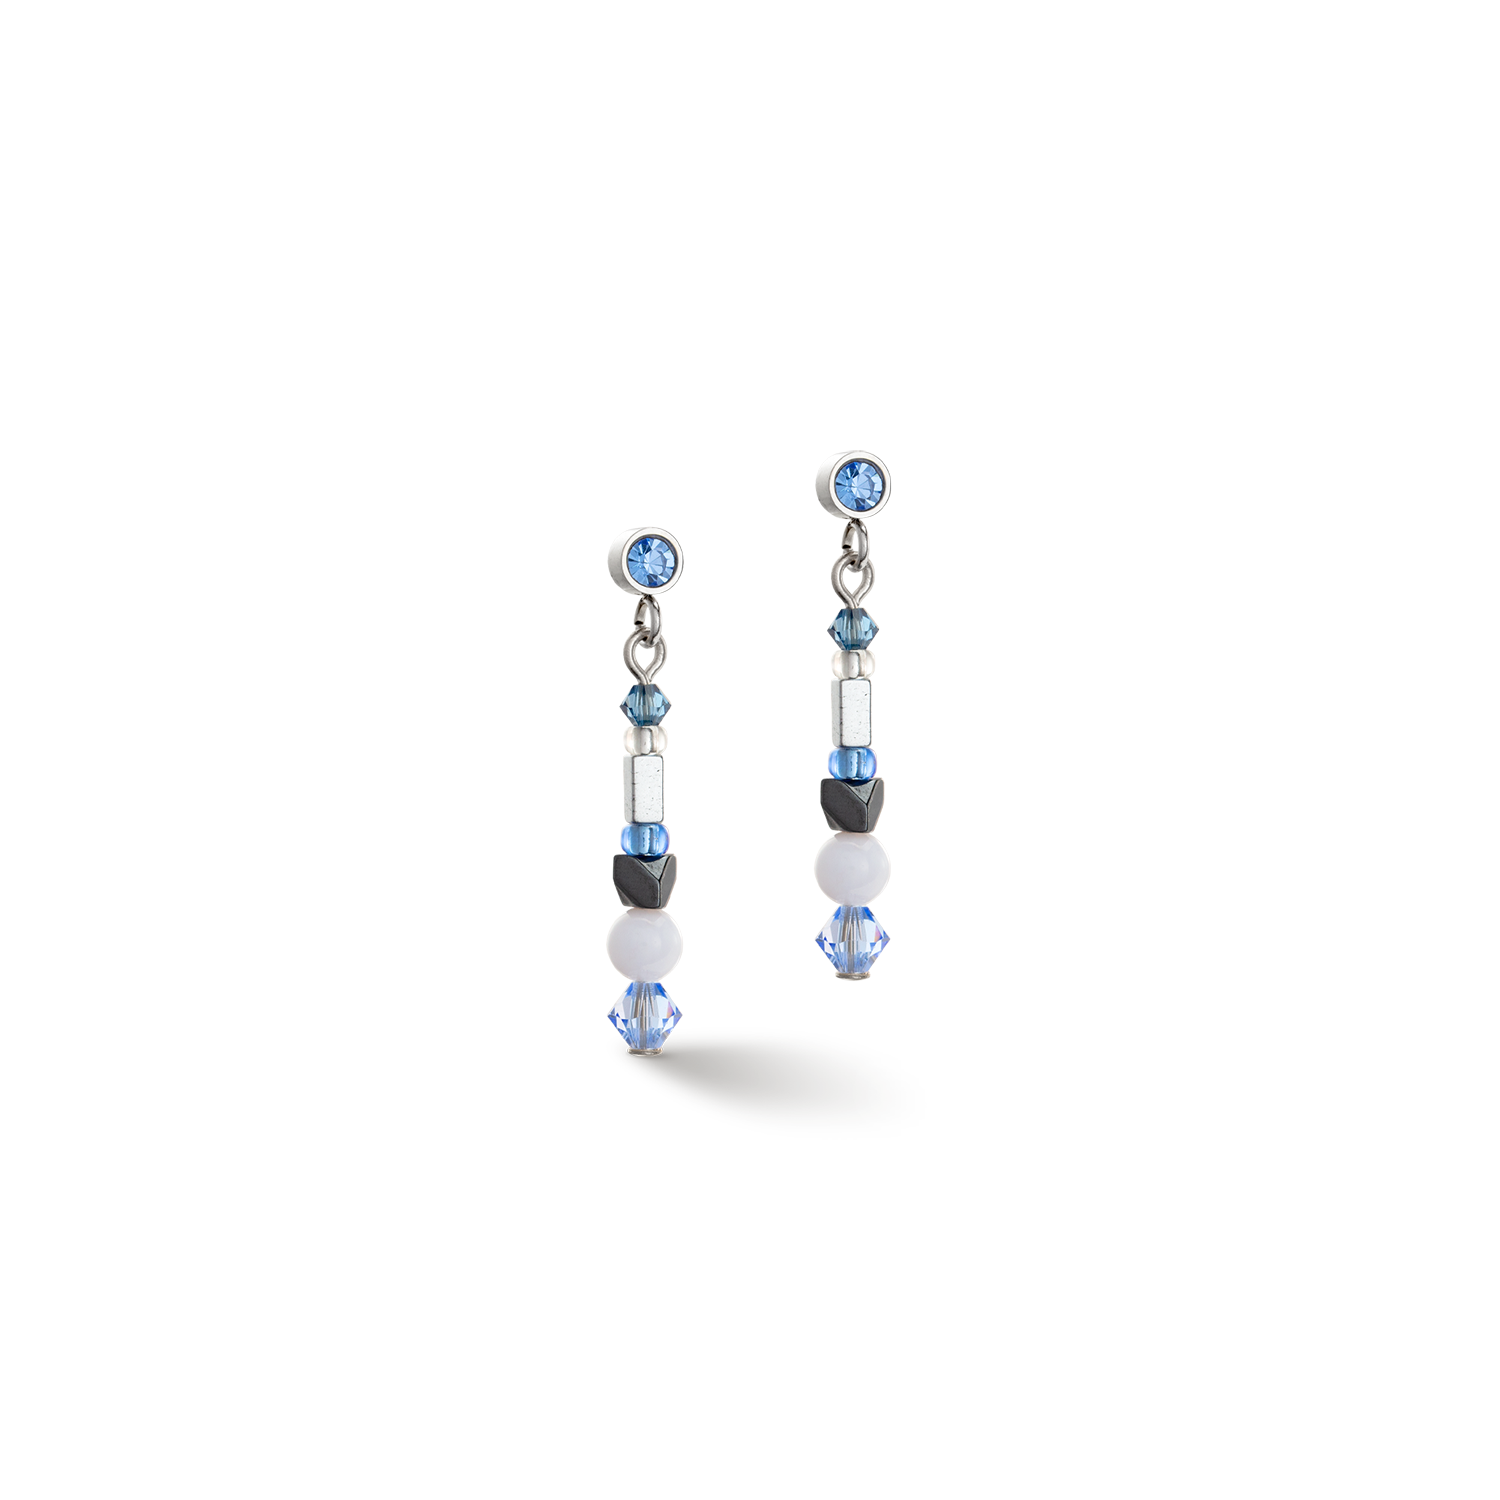 Sparkling Dot Gemstone earrings blue